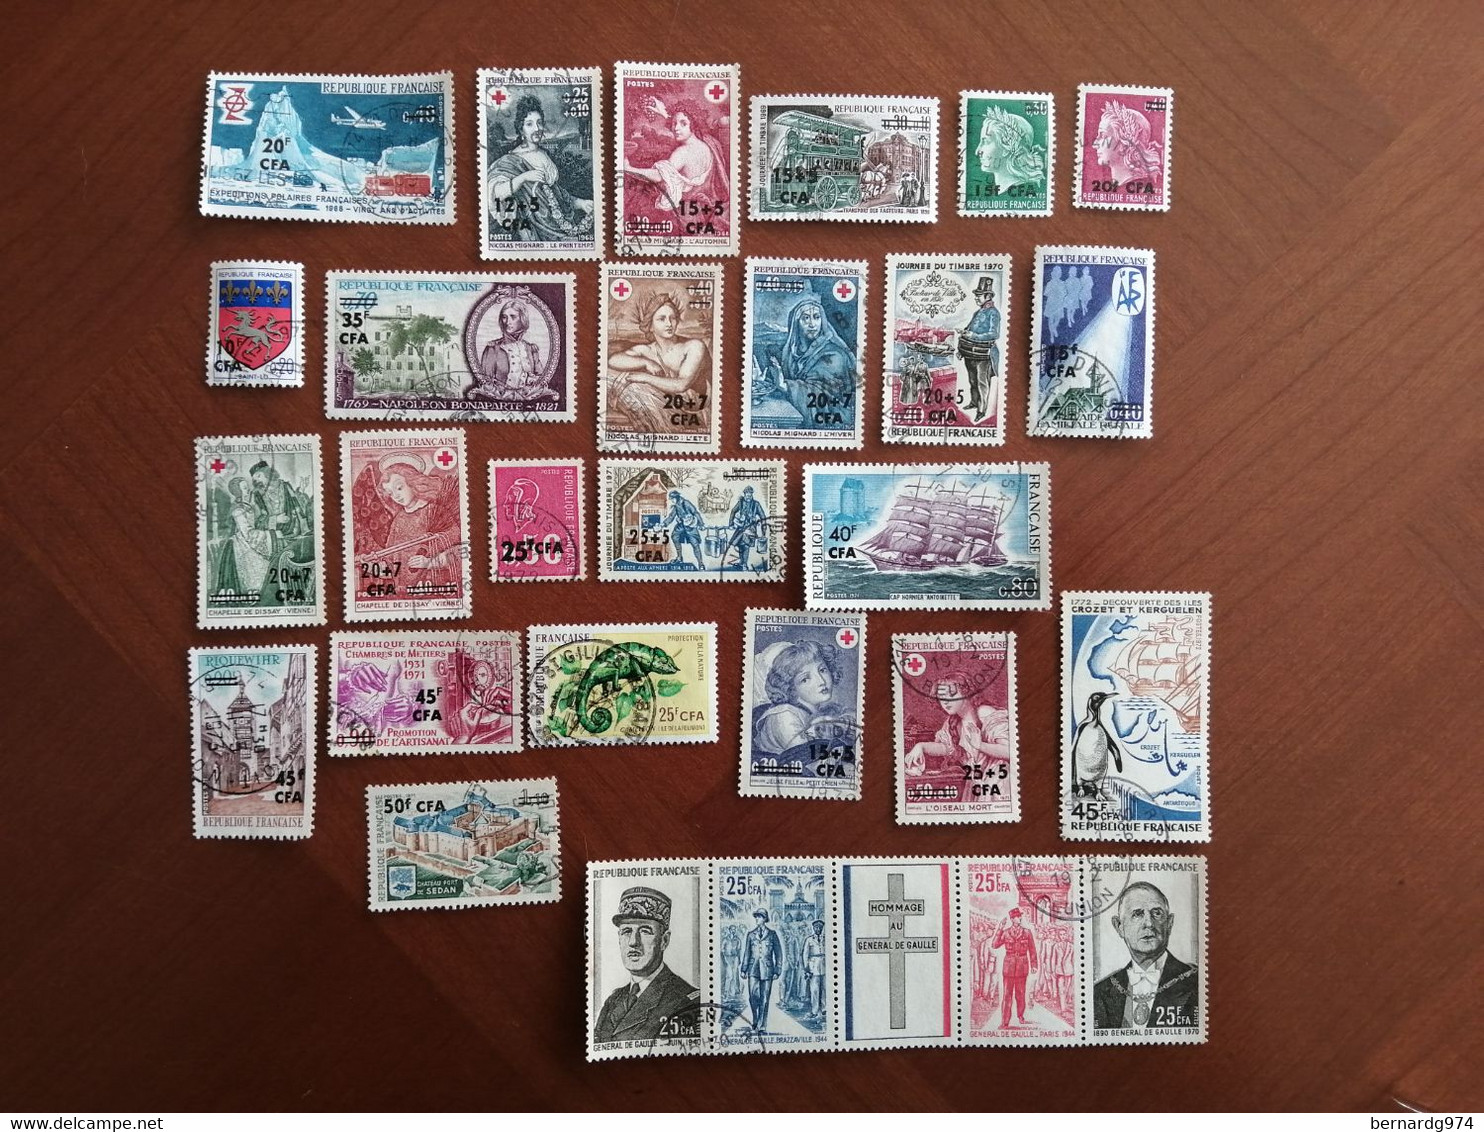 Réunion CFA : collection oblitérée quasi complète : 198 timbres sur 200